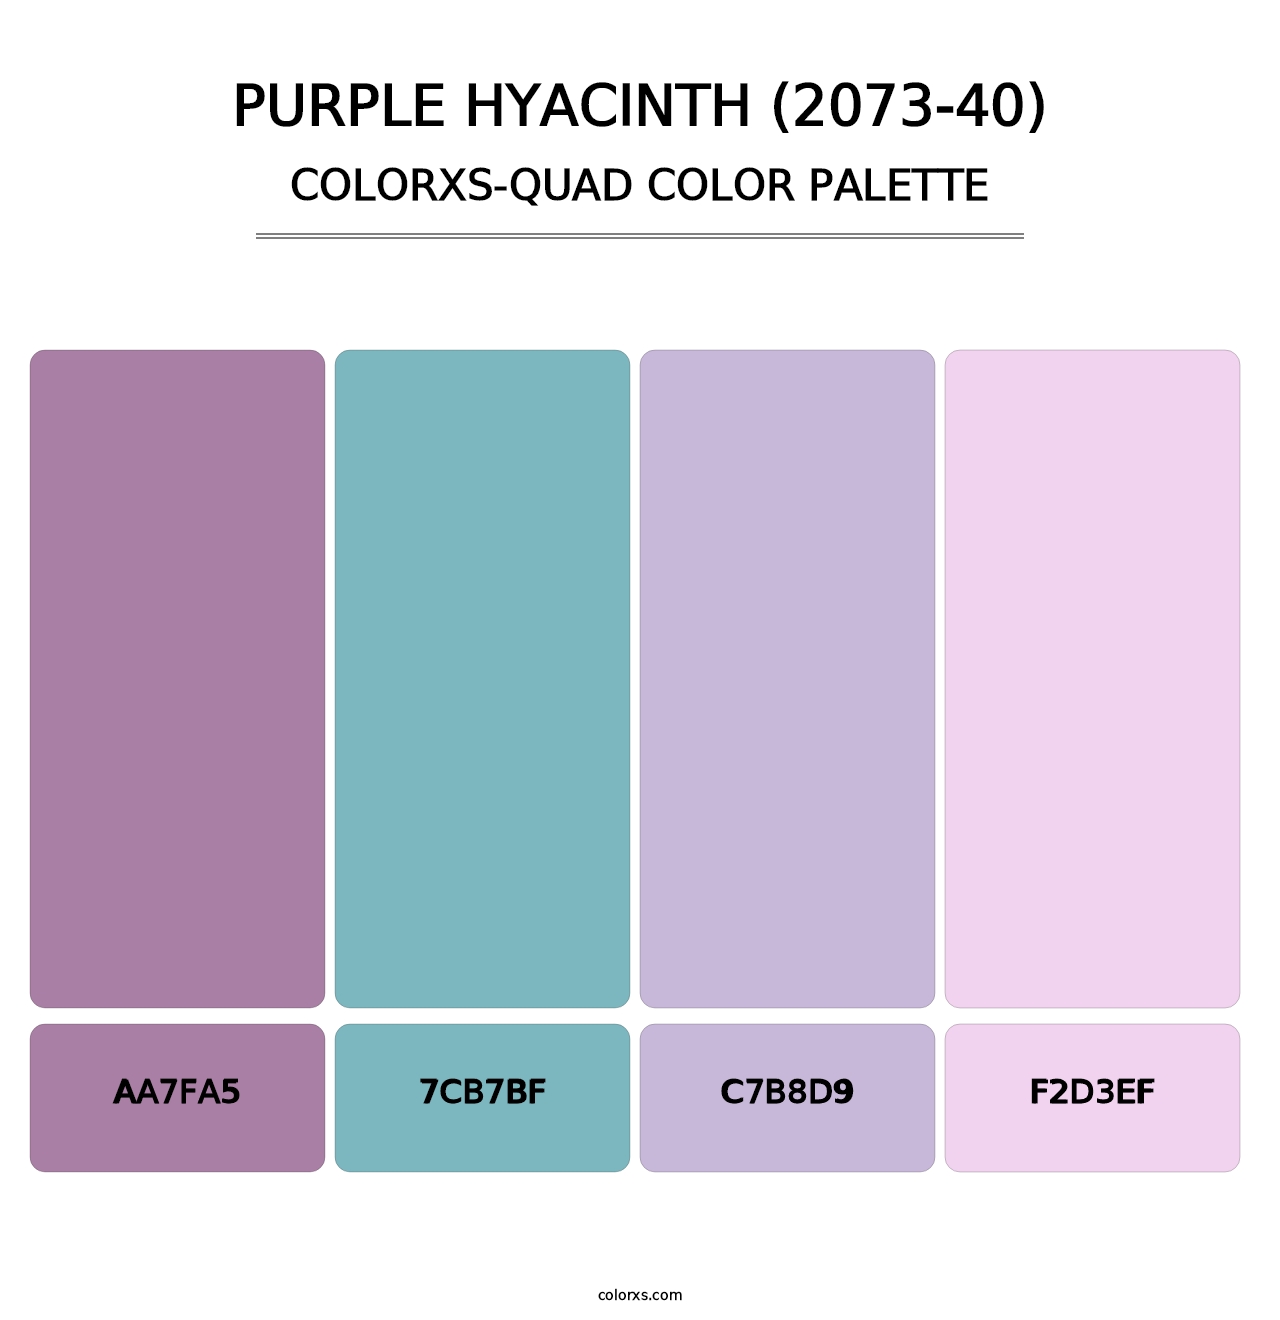 Purple Hyacinth (2073-40) - Colorxs Quad Palette